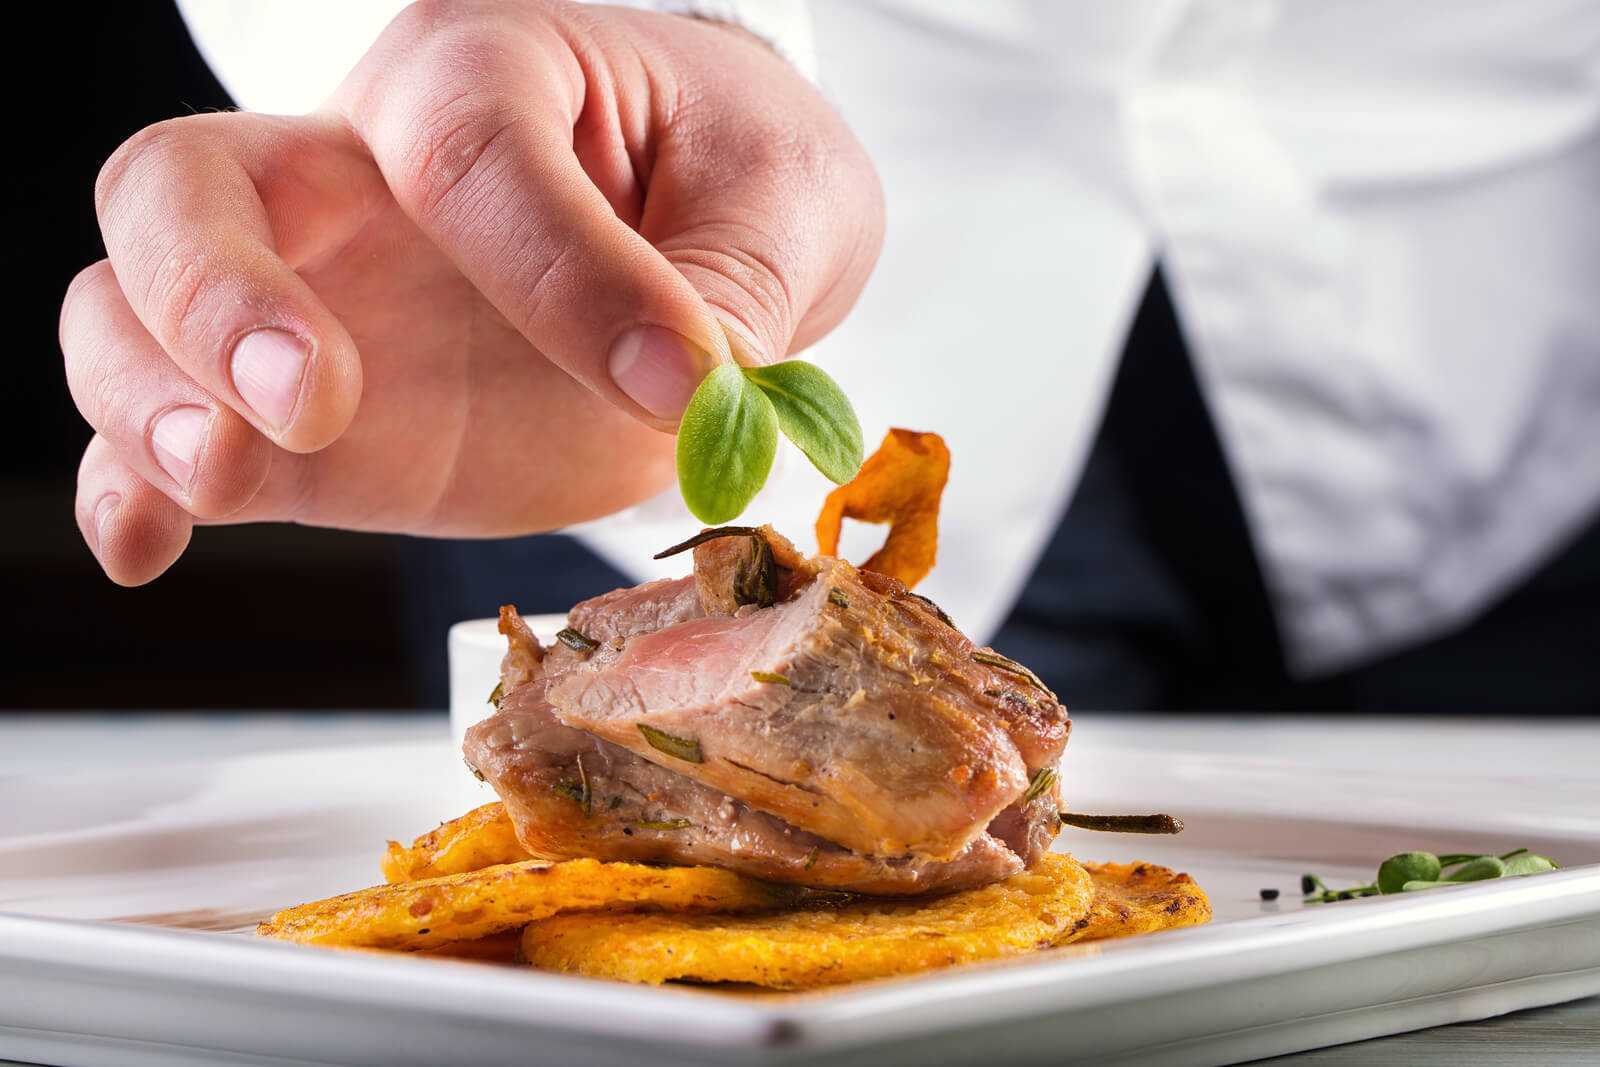 47 секретов от шеф-поваров, которые рассказали, почему в ресторанах еда вкусней